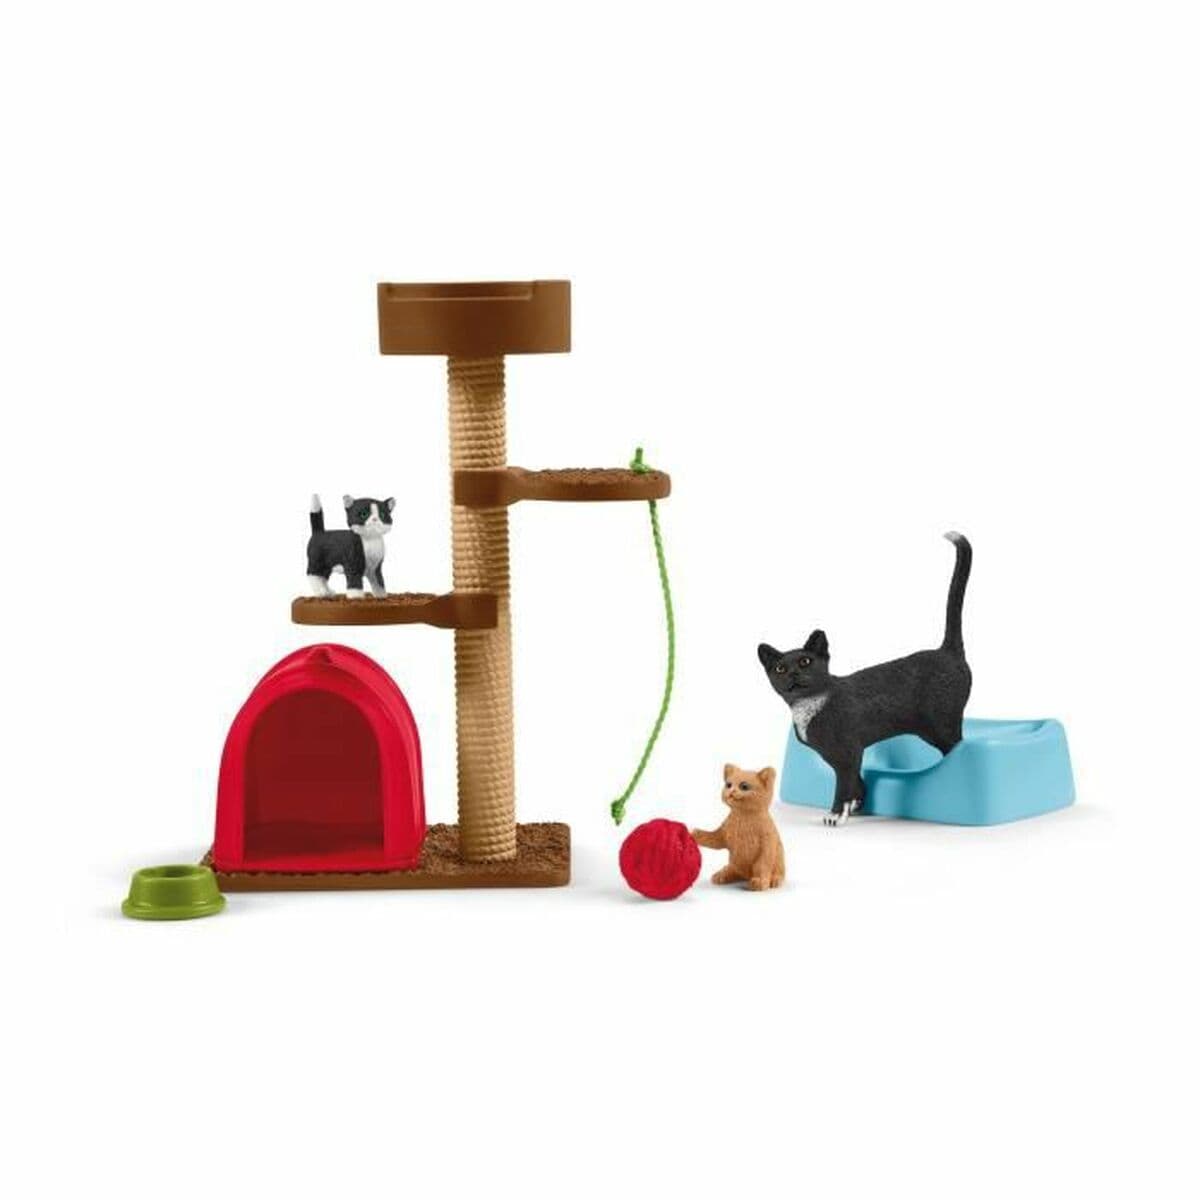 Schleich Spielzeug | Kostüme > Spielzeug und Spiele > Spiel-Tiere Playset Schleich Playtime for cute cats Katzen Kunststoff